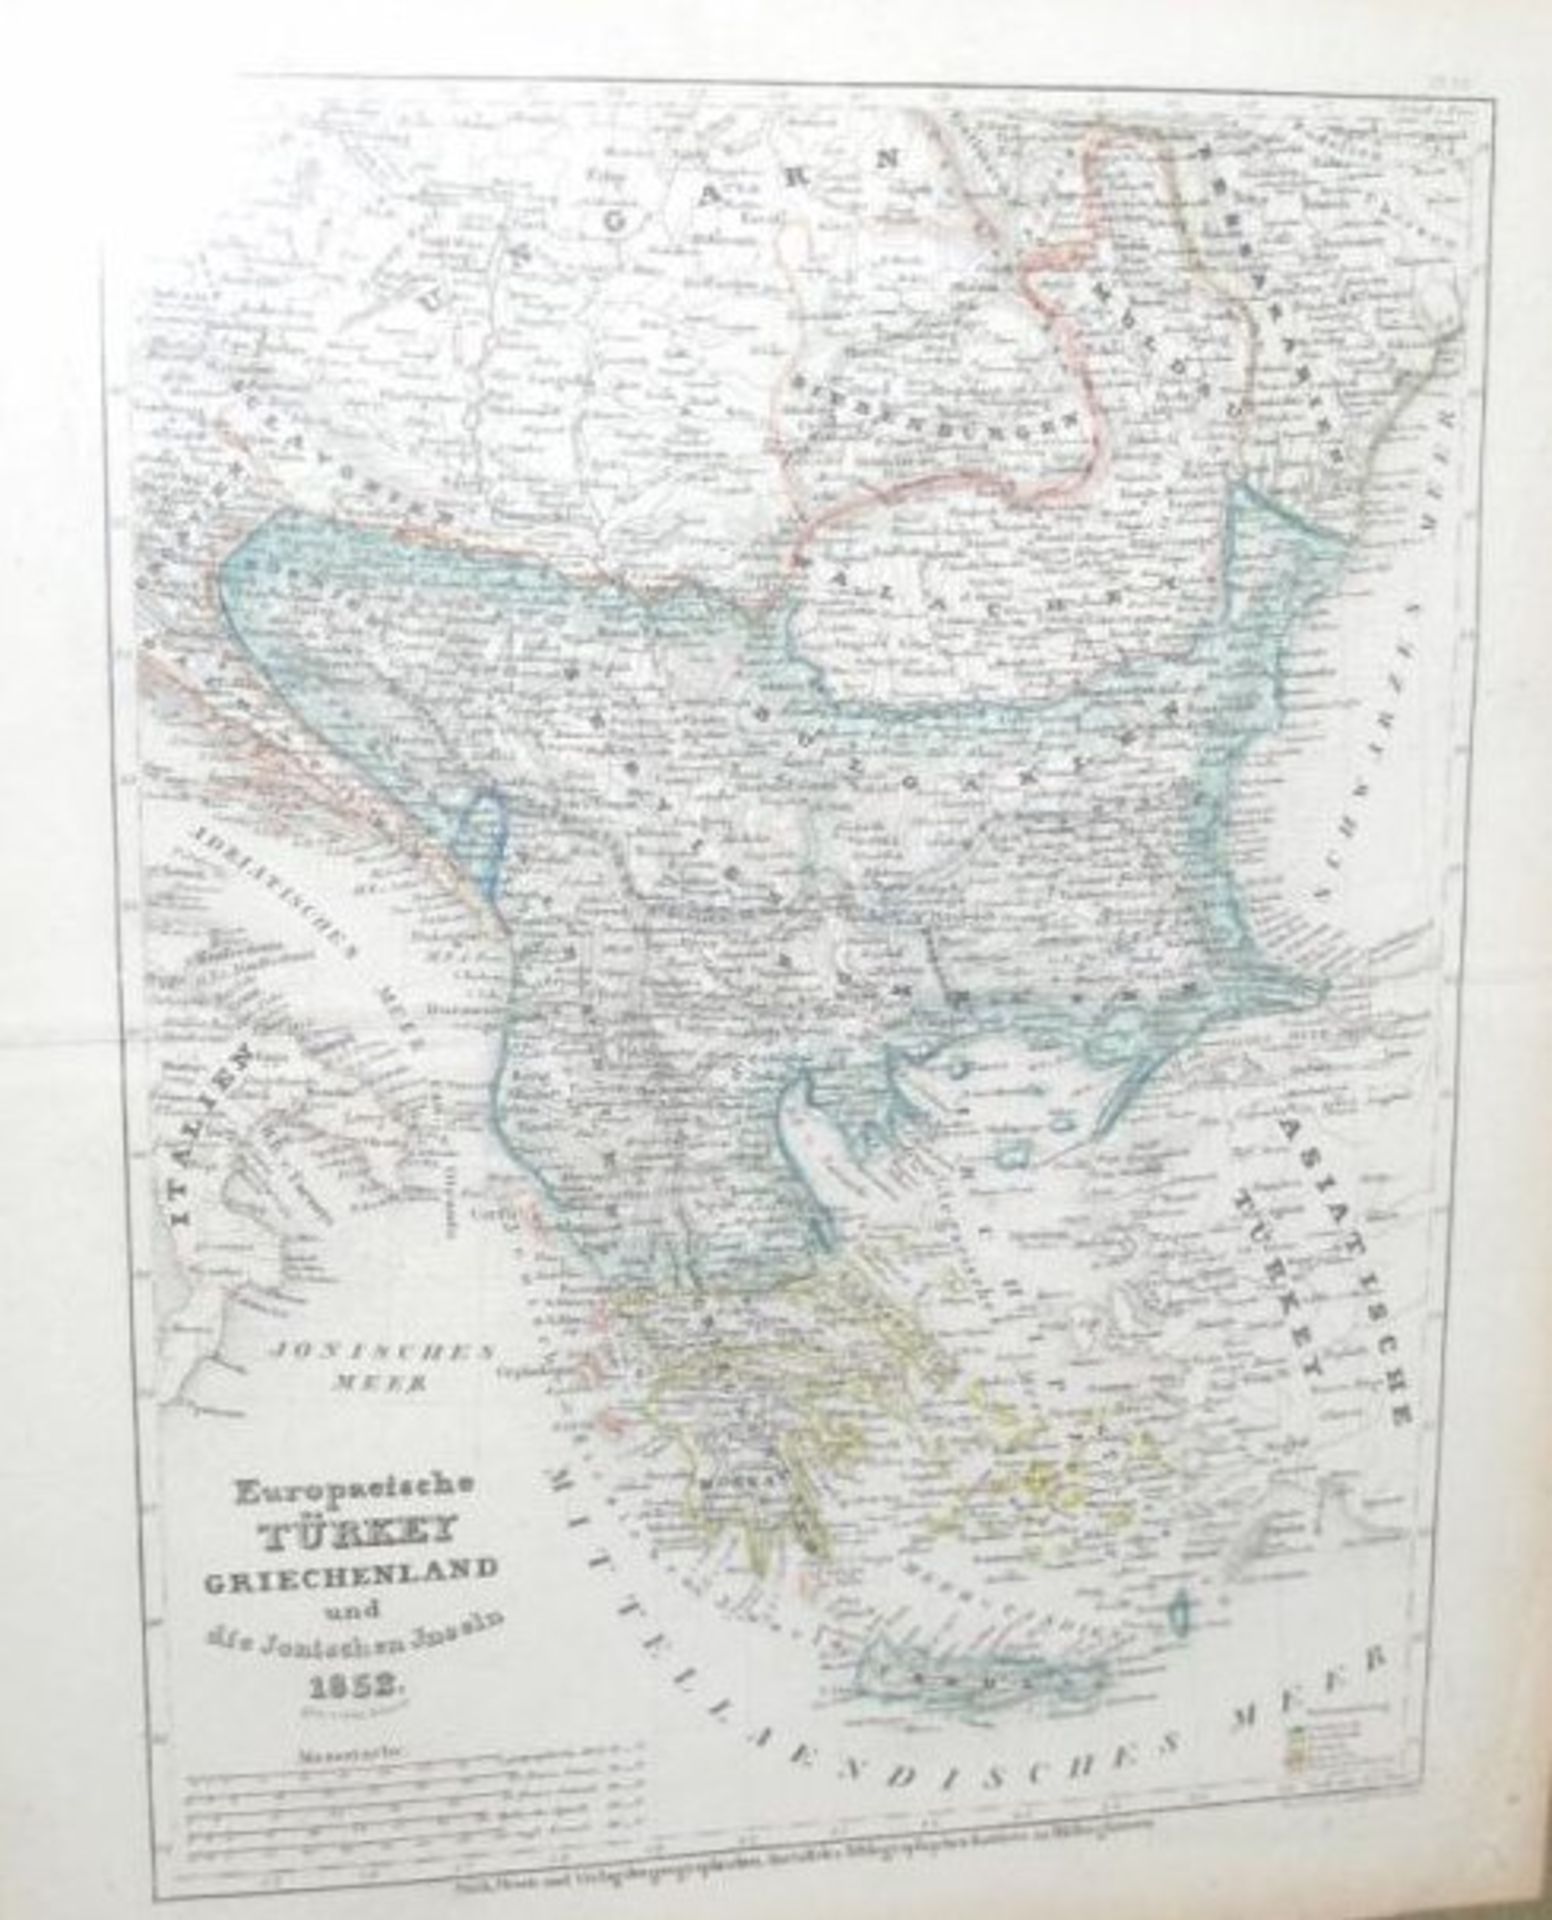 Kartenstich von 1852 "Europäische Türkey, Griechenland und die Jonischen Inseln", Adolf